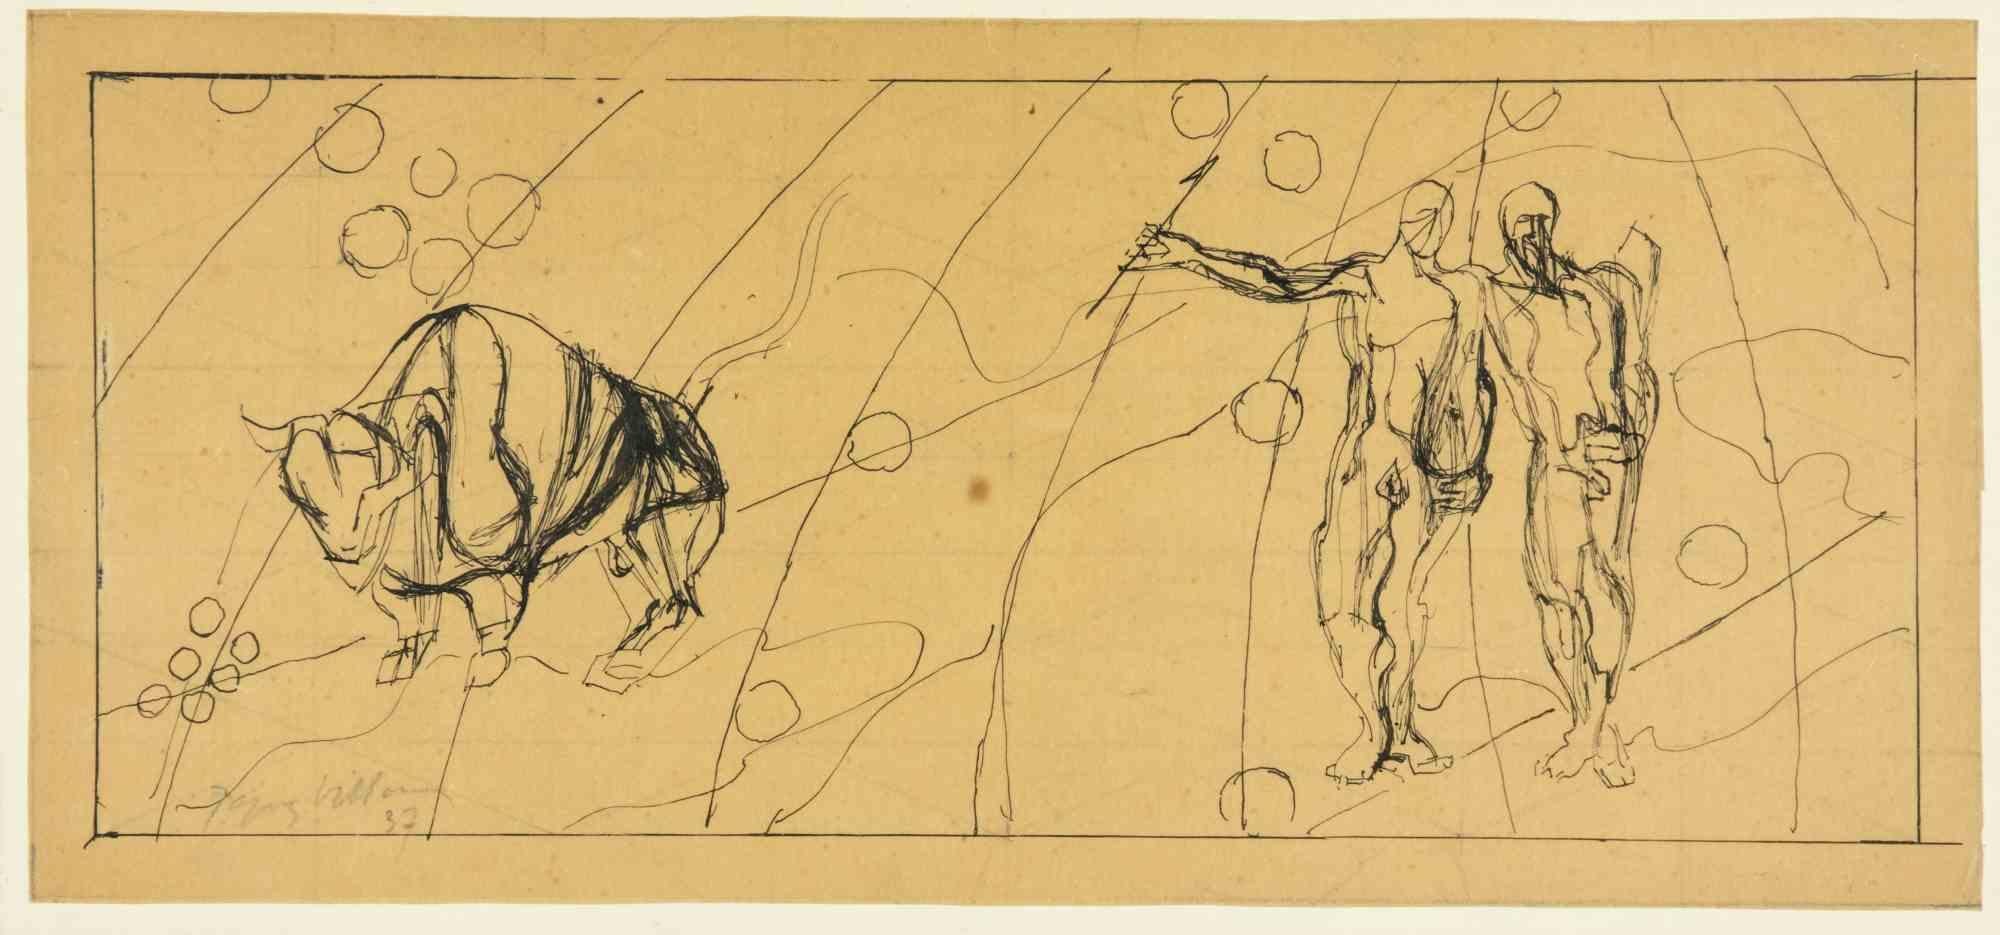 Signes du Zodiac, le Taurus et le Gémeaux est une  œuvre d'art moderne réalisée par Jacques Villon en 1937.

Dessin à l'encre de Chine sur papier.

Signé à la main et daté dans la marge inférieure.

Cadre Vintage inclus dans cette rare oeuvre d'art